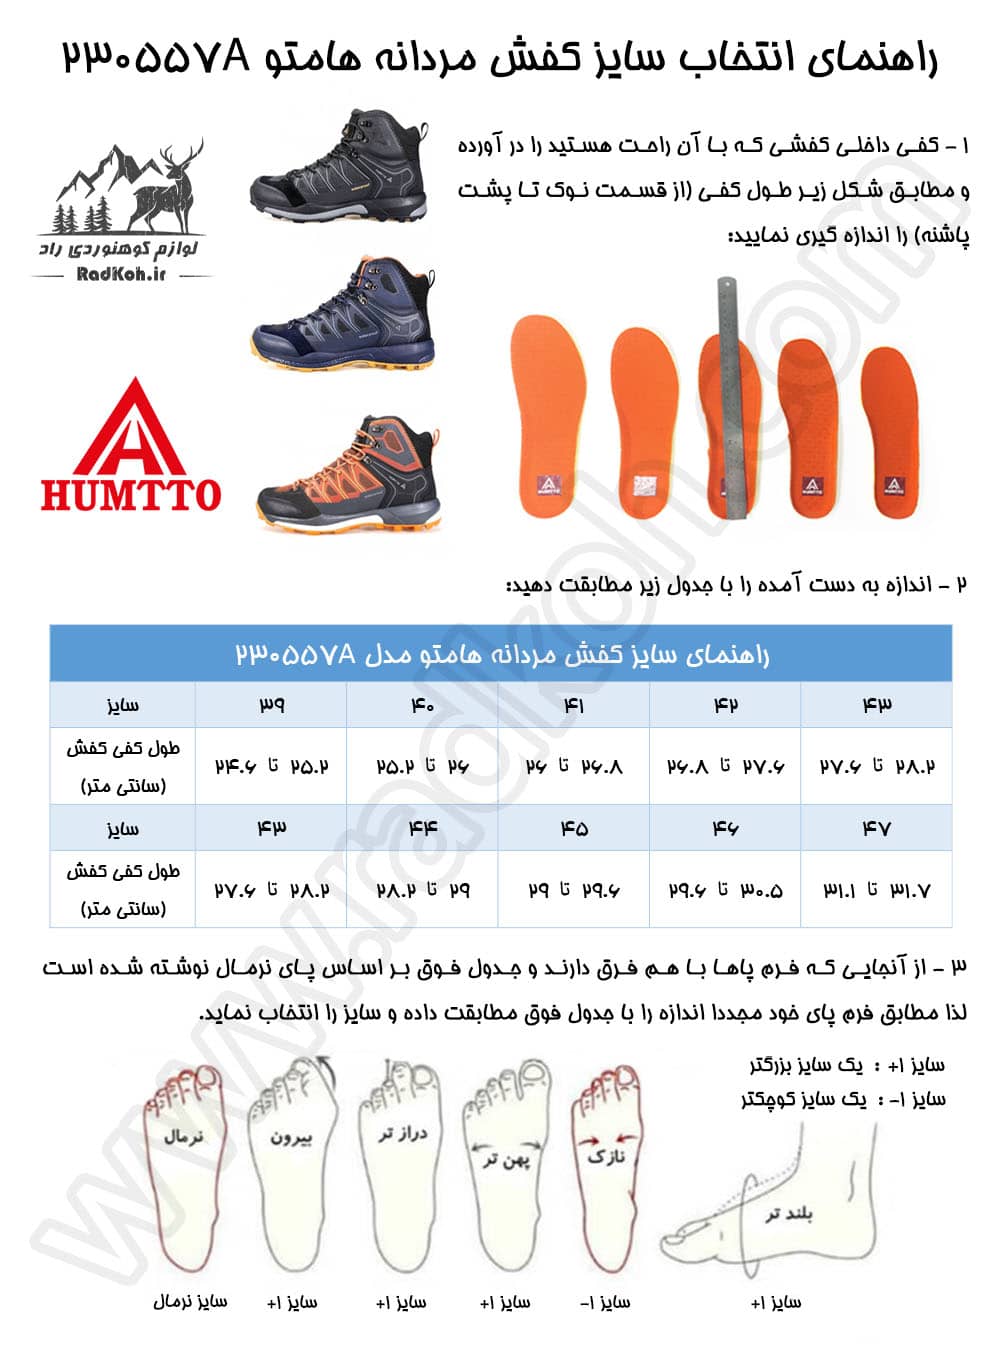 جدول راهنمای سایز کفش هومتو humtto 230557a